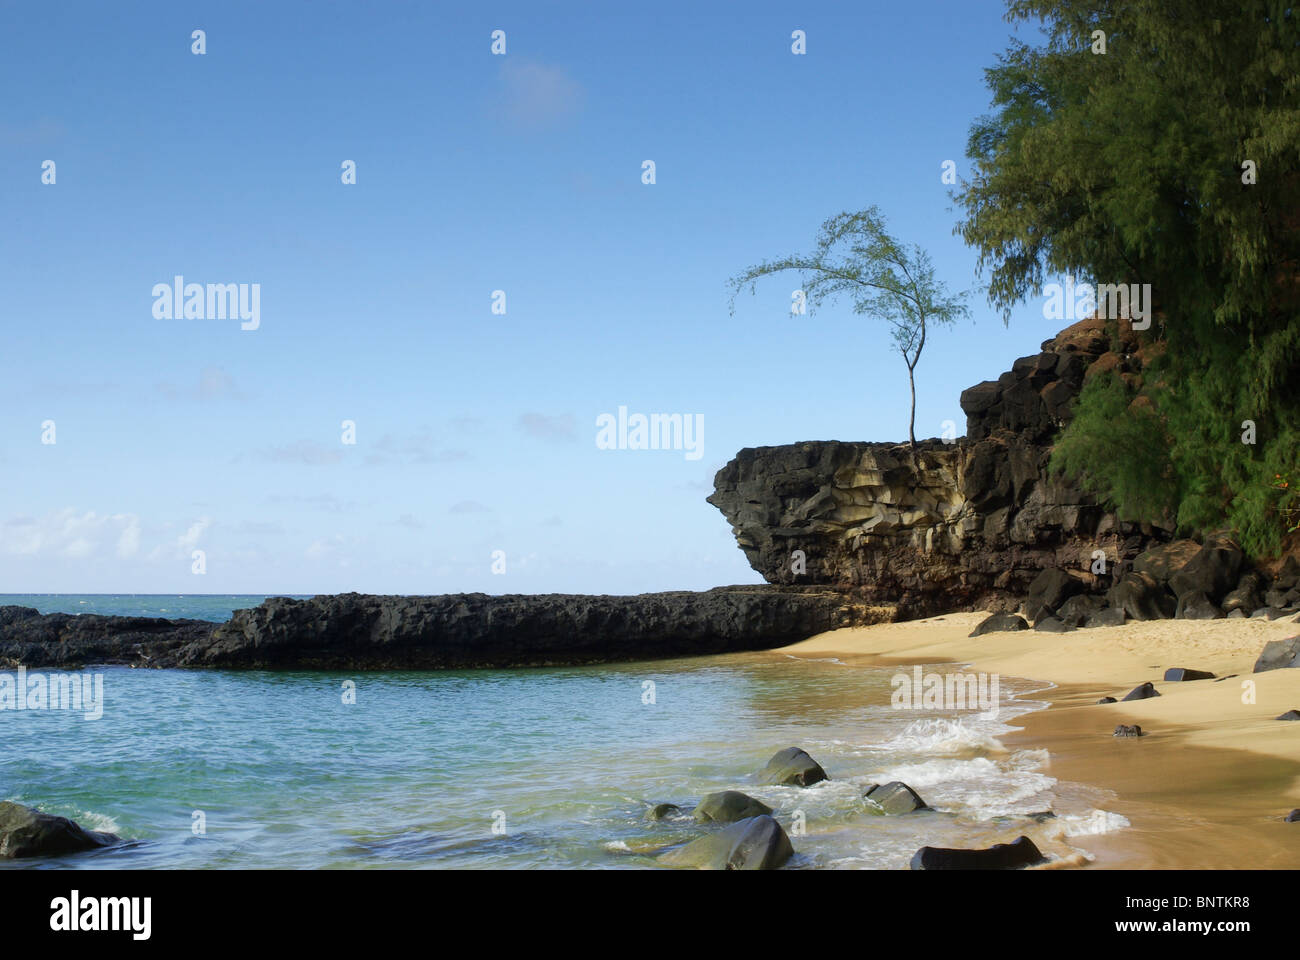 Ein malerischen Strand geschossen mit Lavafelsen, ein schöner einsamer Baum, Sand und Surfen.  Eine wörtliche Paradies auf Erden. Stockfoto